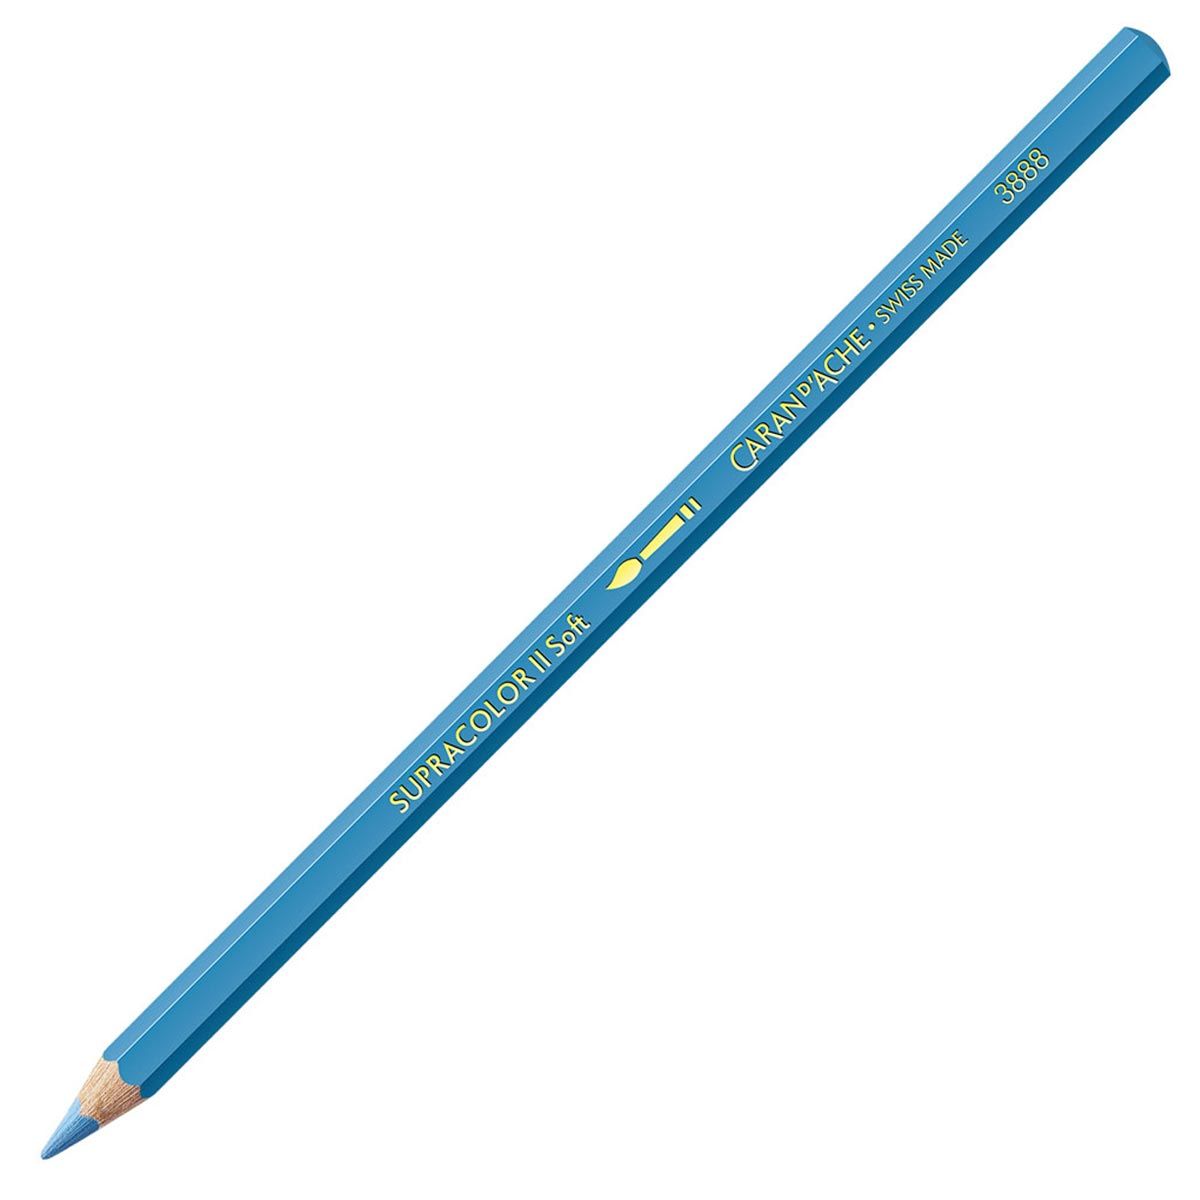 Caran d'Ache Supracolor ll Soft Aquarelle Pencil - Sky Blue 141